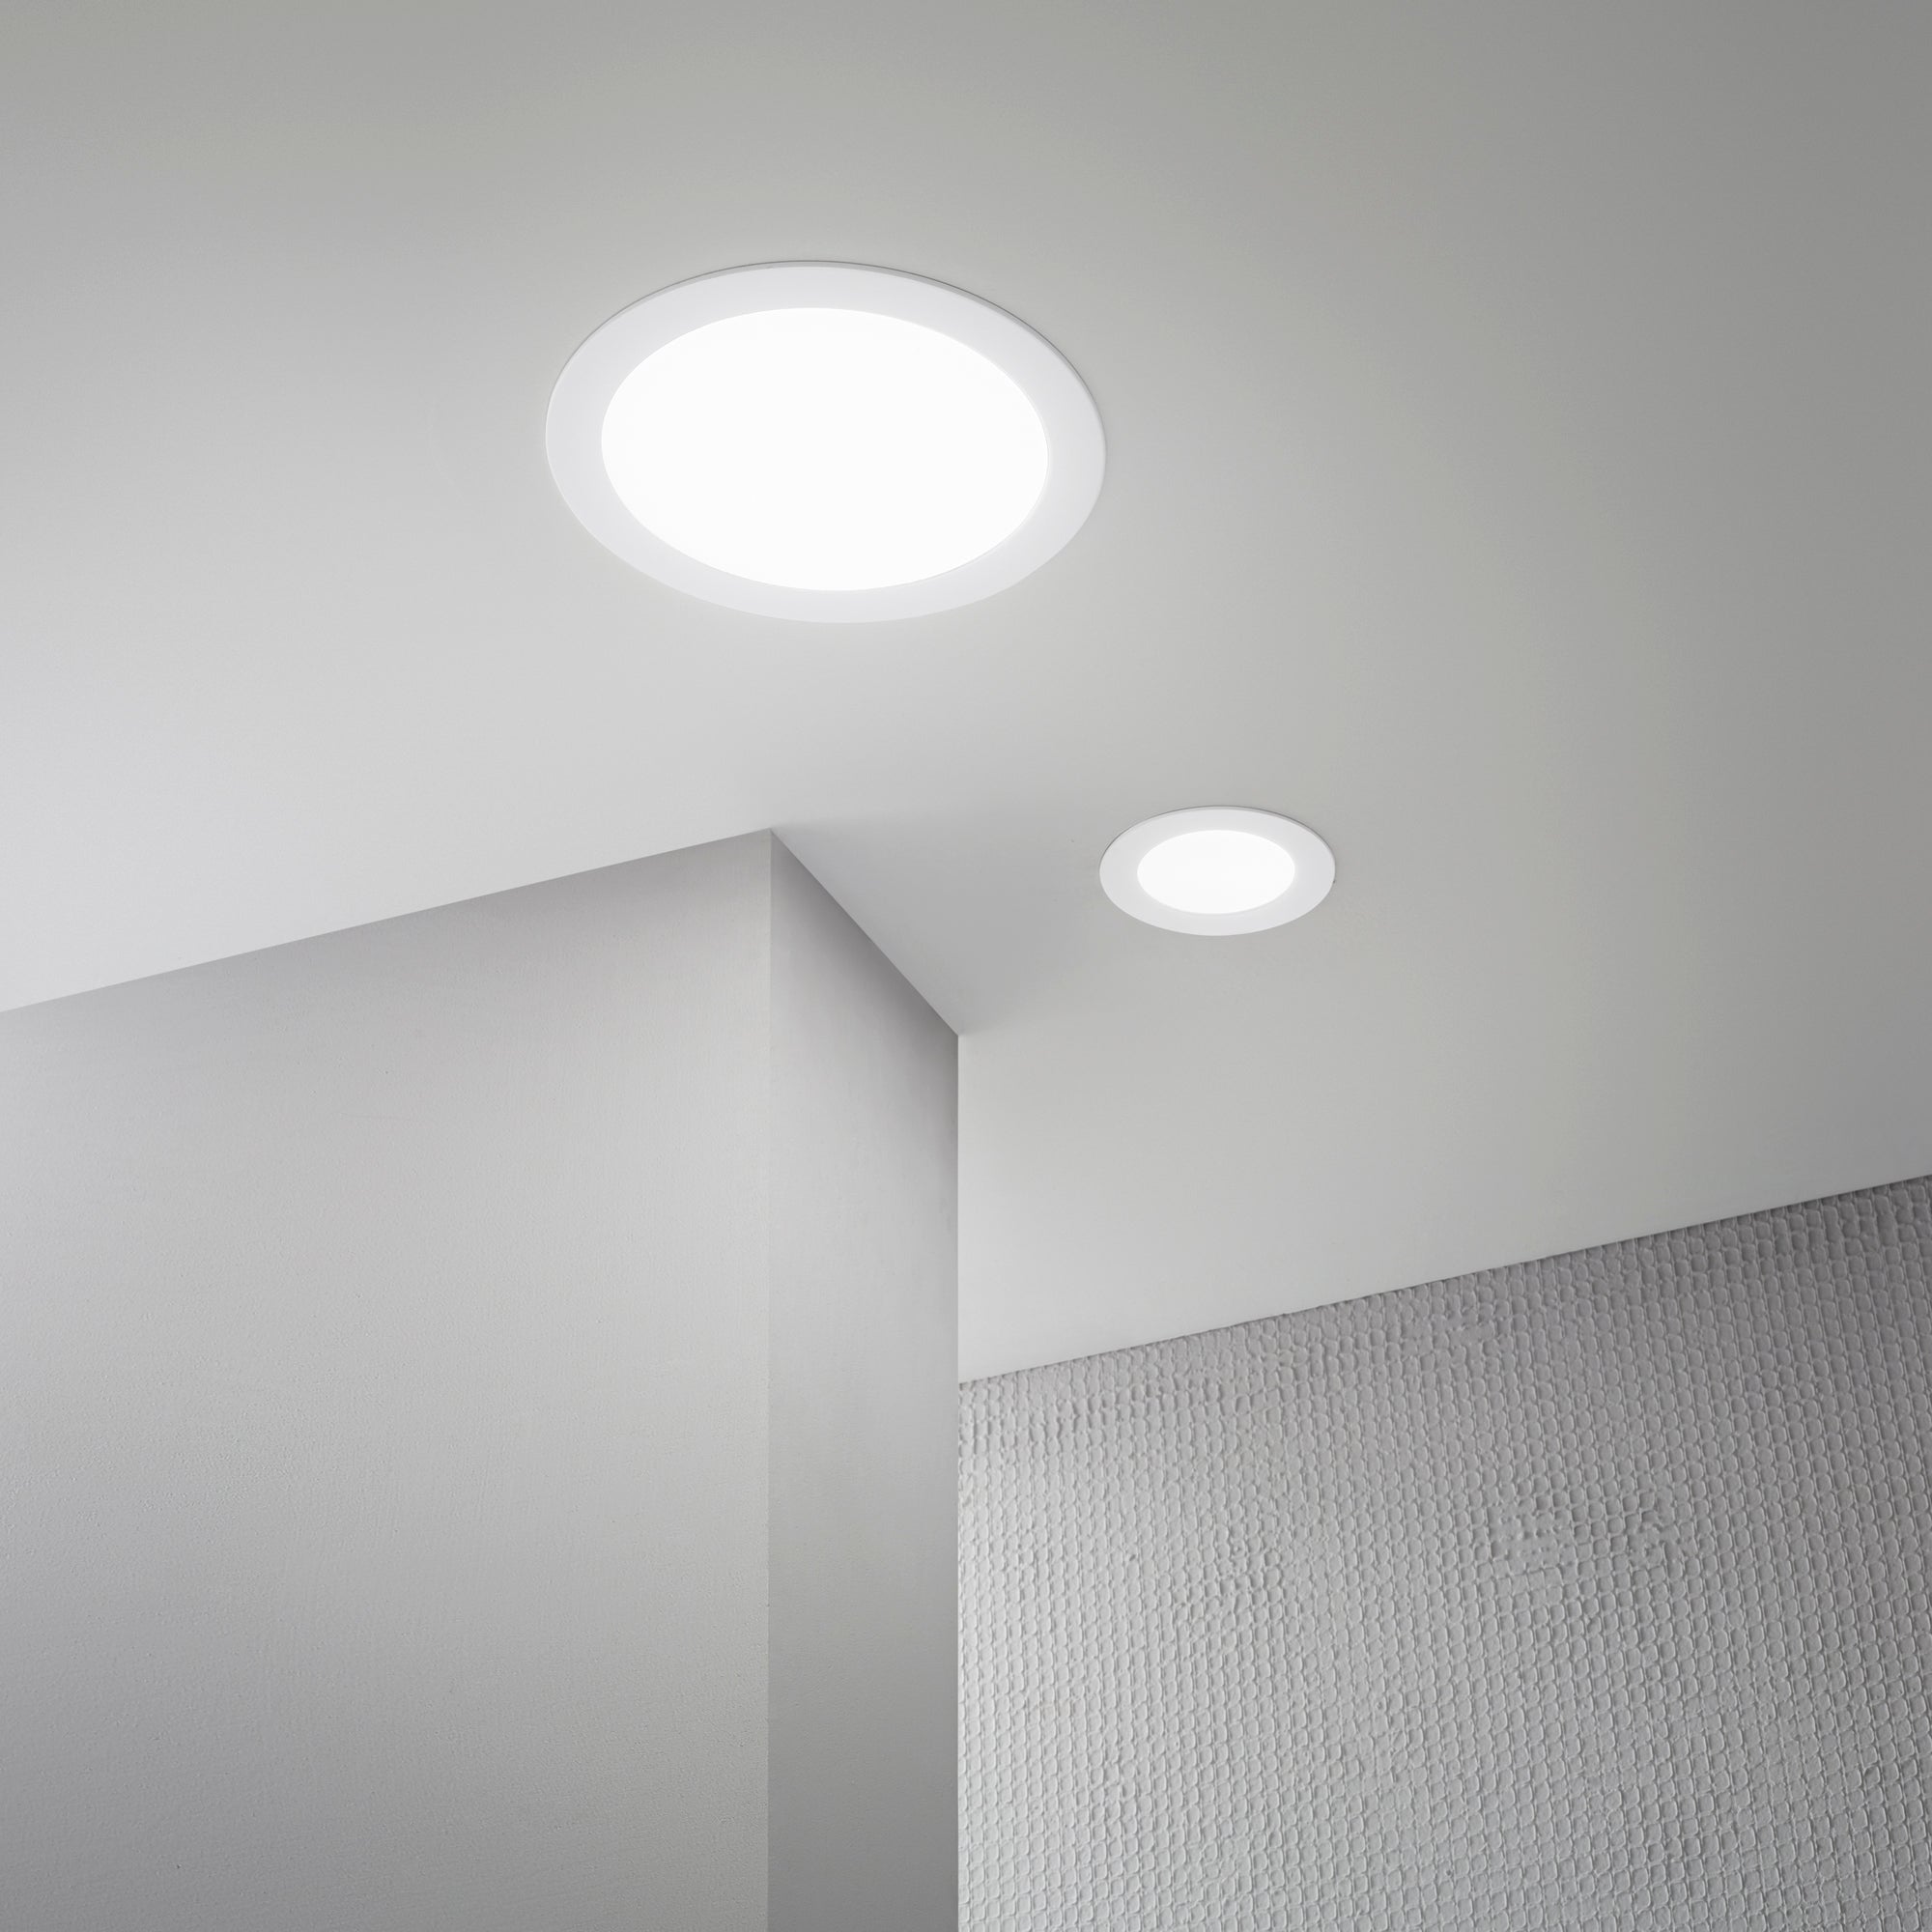 Luminaria LED empotrable SLIM de aluminio blanco con interruptor CCT para cambiar la temperatura de color